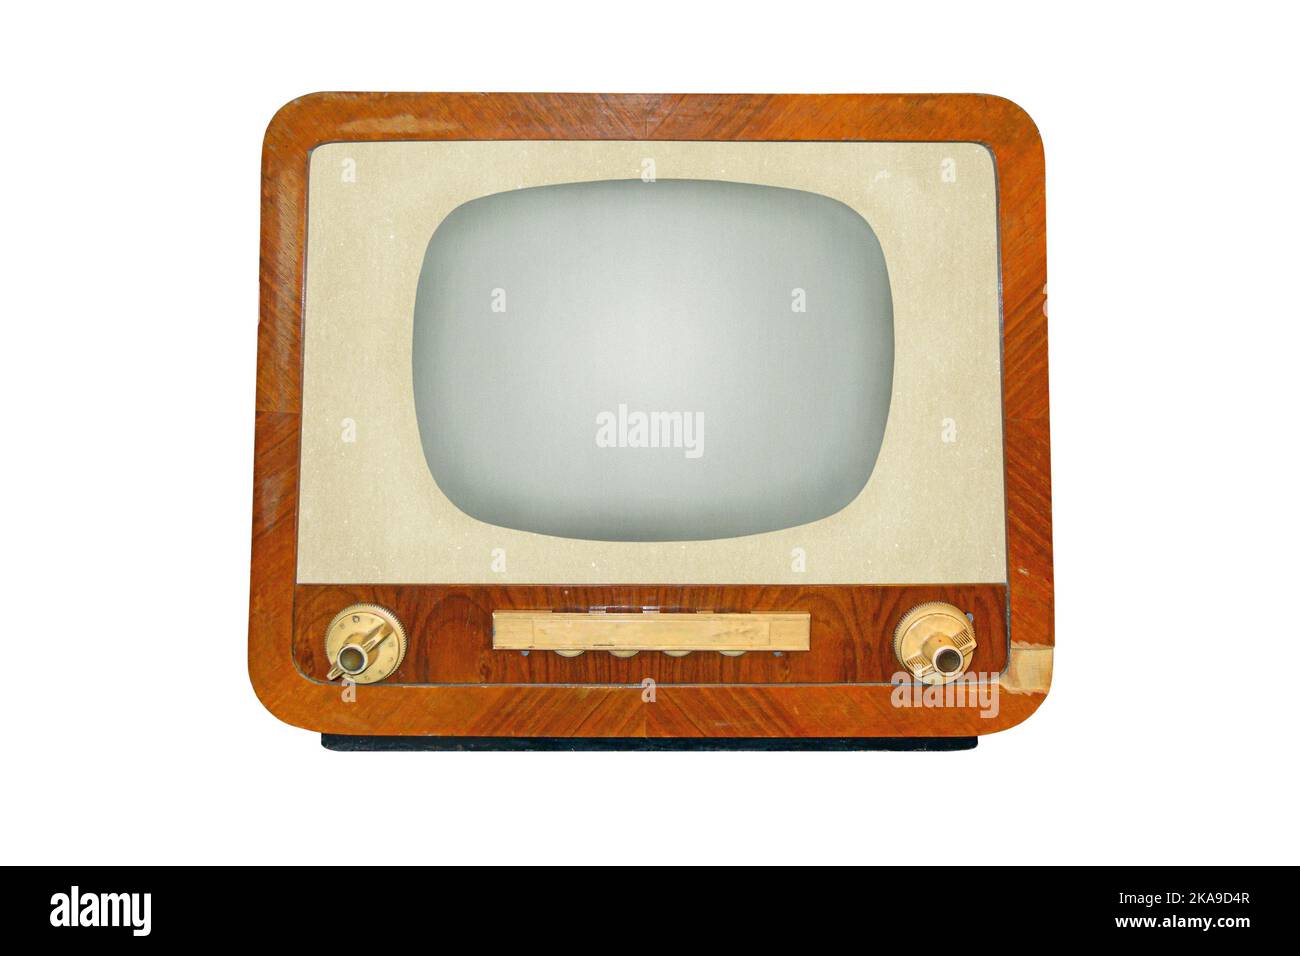 Alter Retro-CRT-Fernsehempfänger, isoliert auf weißem Hintergrund, klassische analoge TV-Technologie Stockfoto